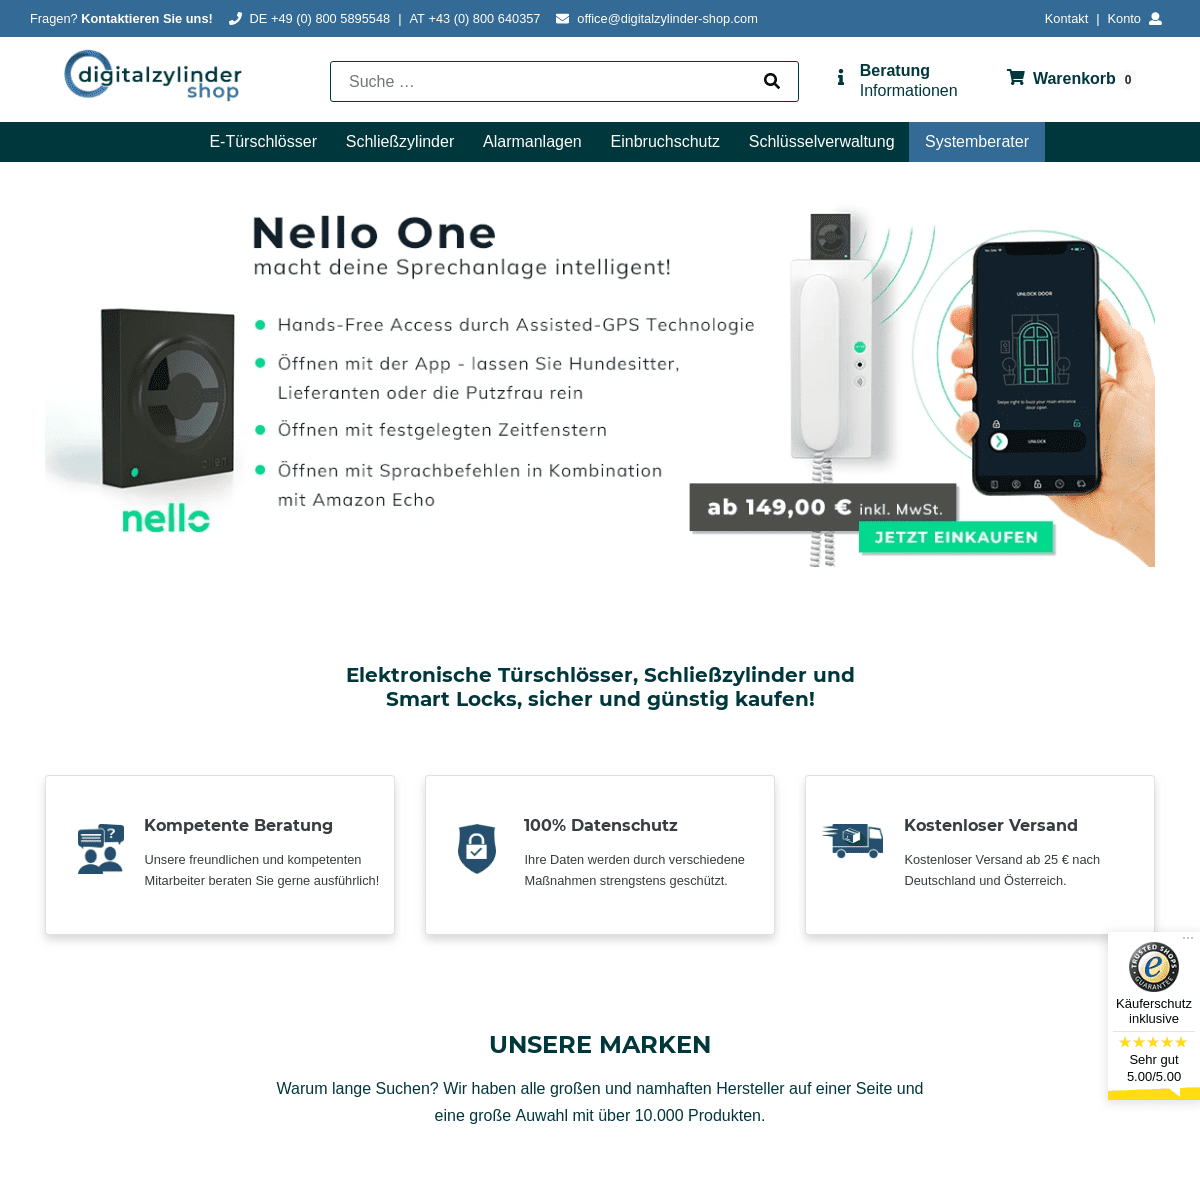 A complete backup of digitalzylinder-shop.com